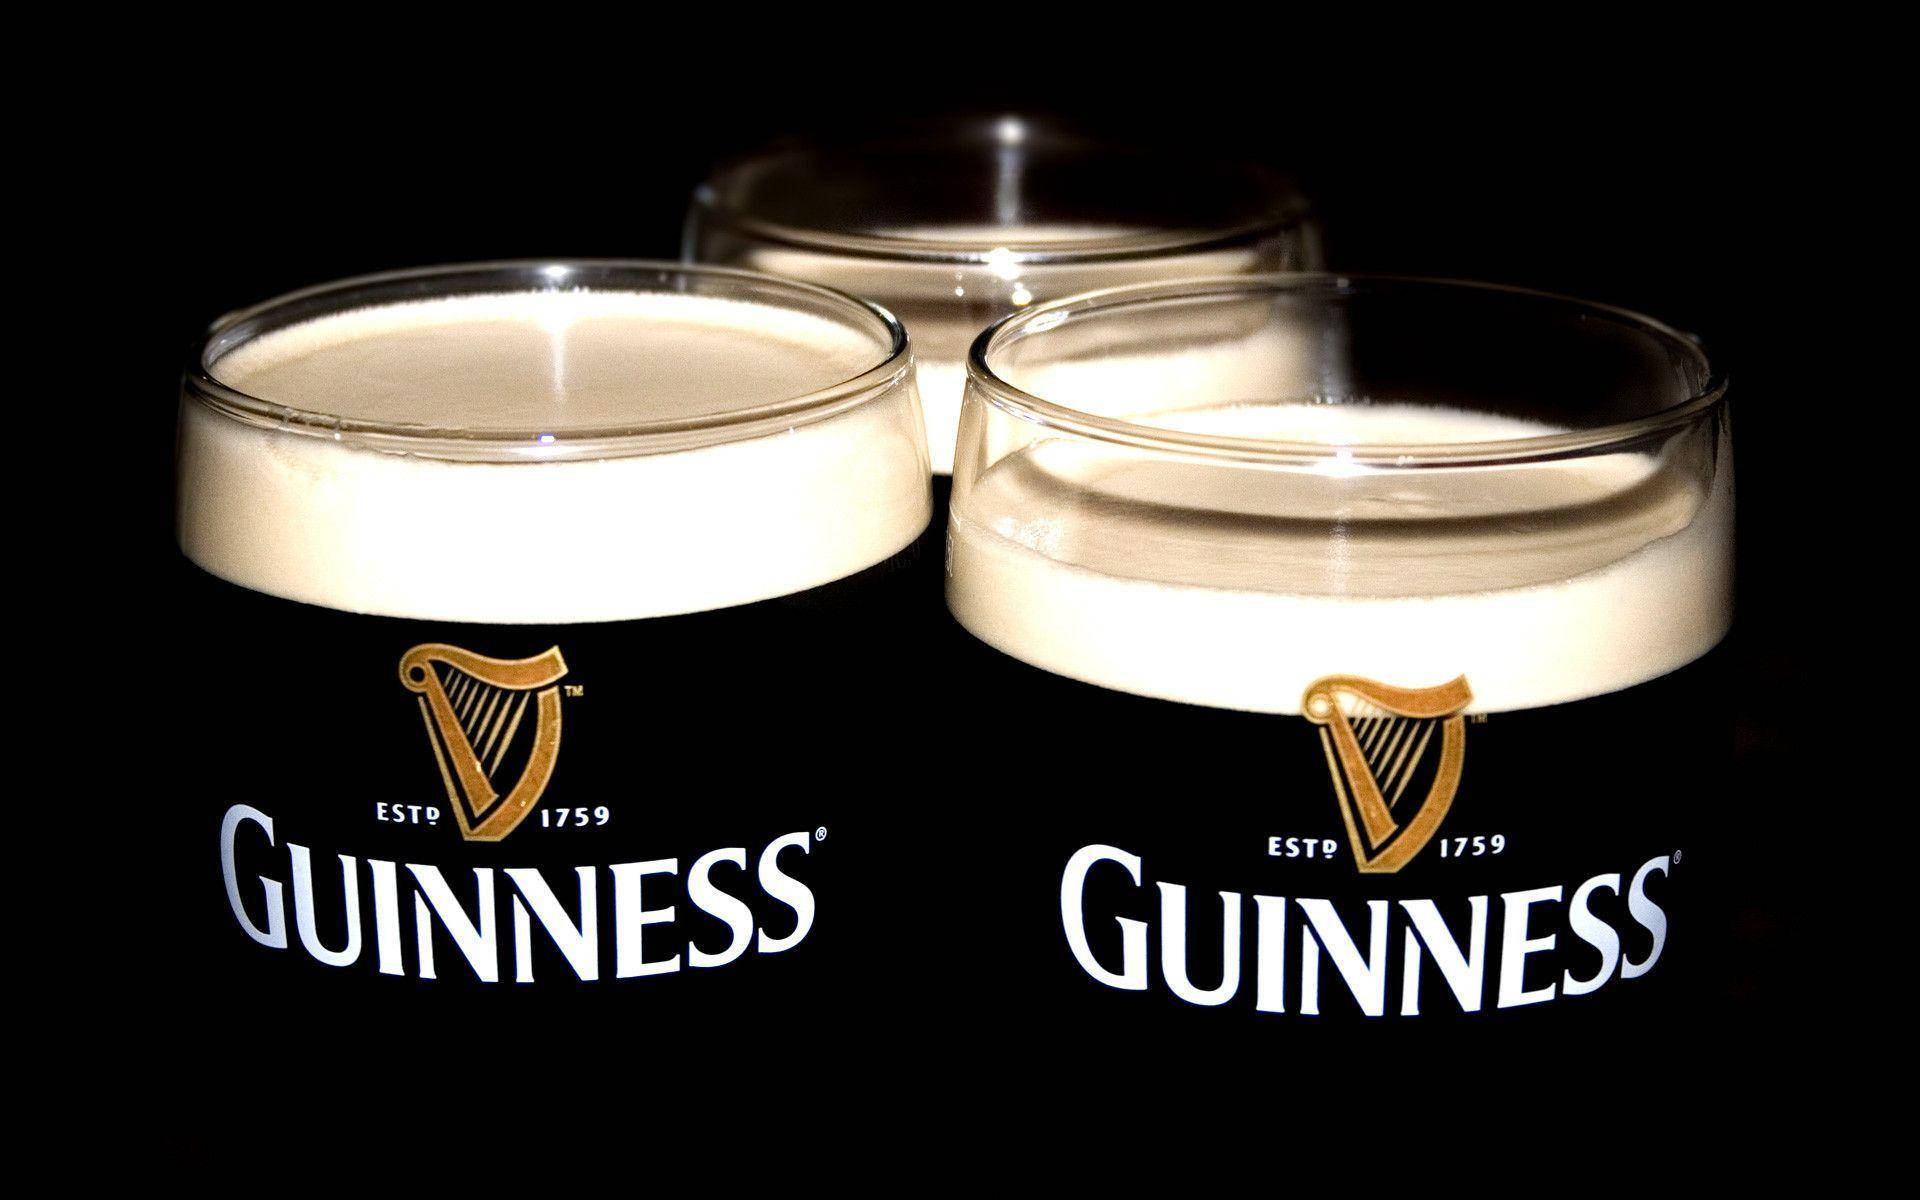 Tresvasos De Guinness Stout Seca Irlandesa, En Una Toma De Plana-mediano Alcance, Para Usar Como Fondo De Pantalla En Tu Computadora O Celular Fondo de pantalla